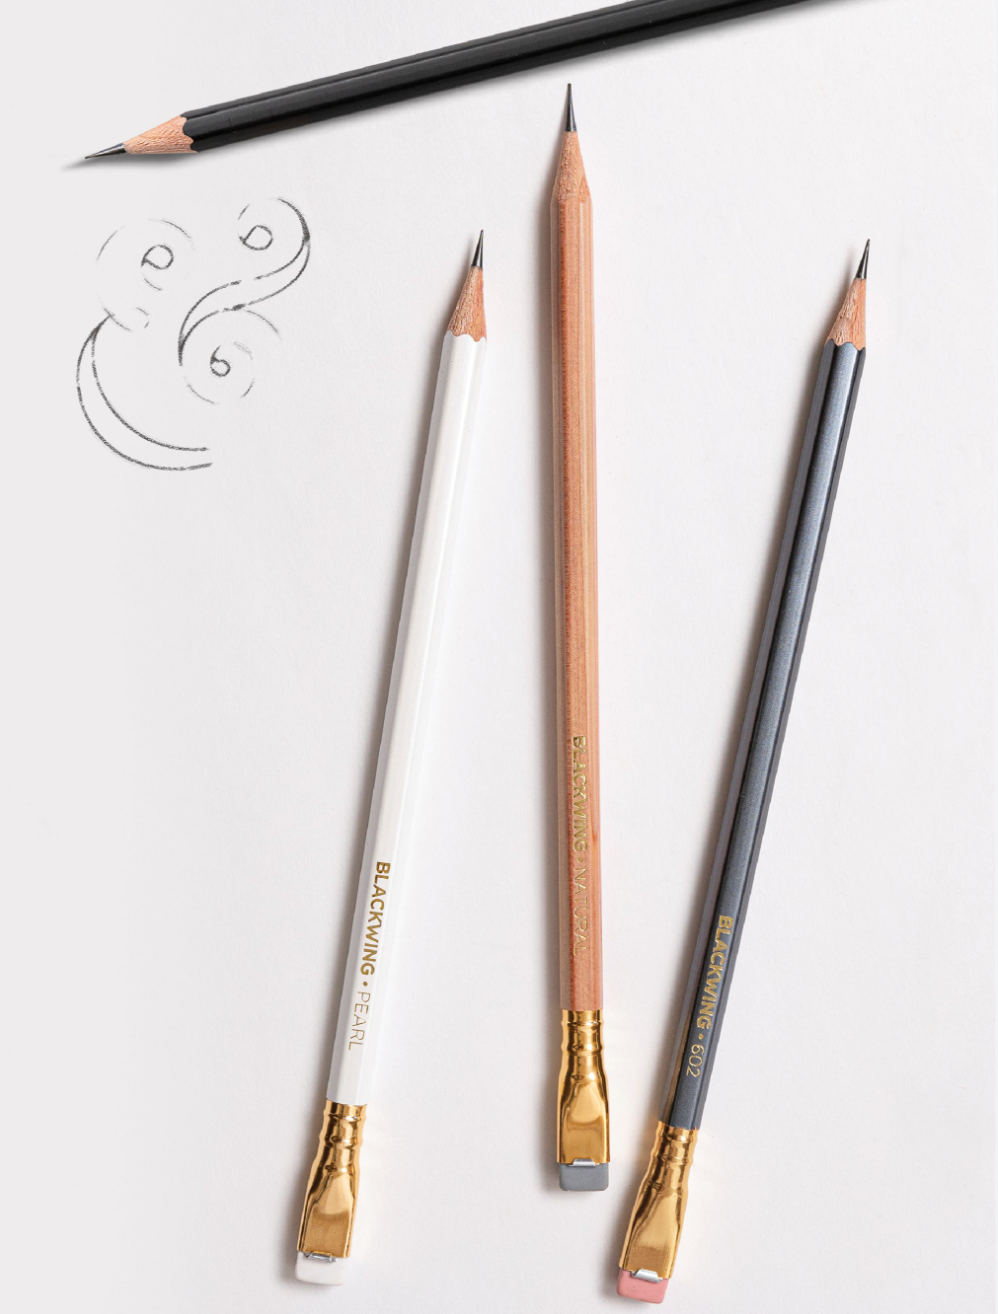 Blackwing – Natural – Pencil per unit